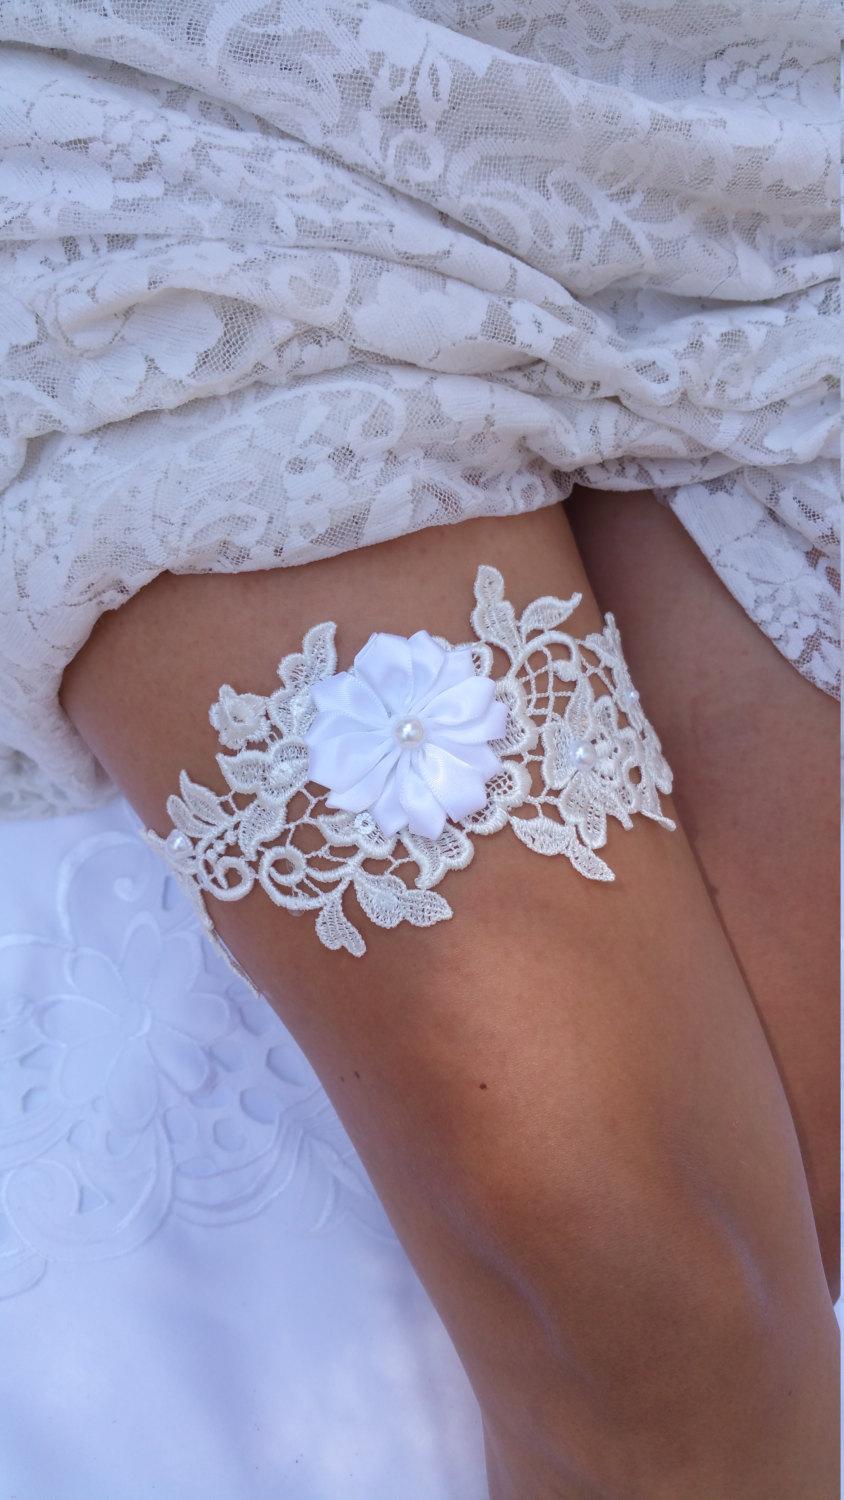 Wedding - Ivory Lace wedding garter, White Lace Garter, Lace Bridal Garter, Garter Belt Wedding, Prom Garters, Garter Wedding, White Flower Garter,